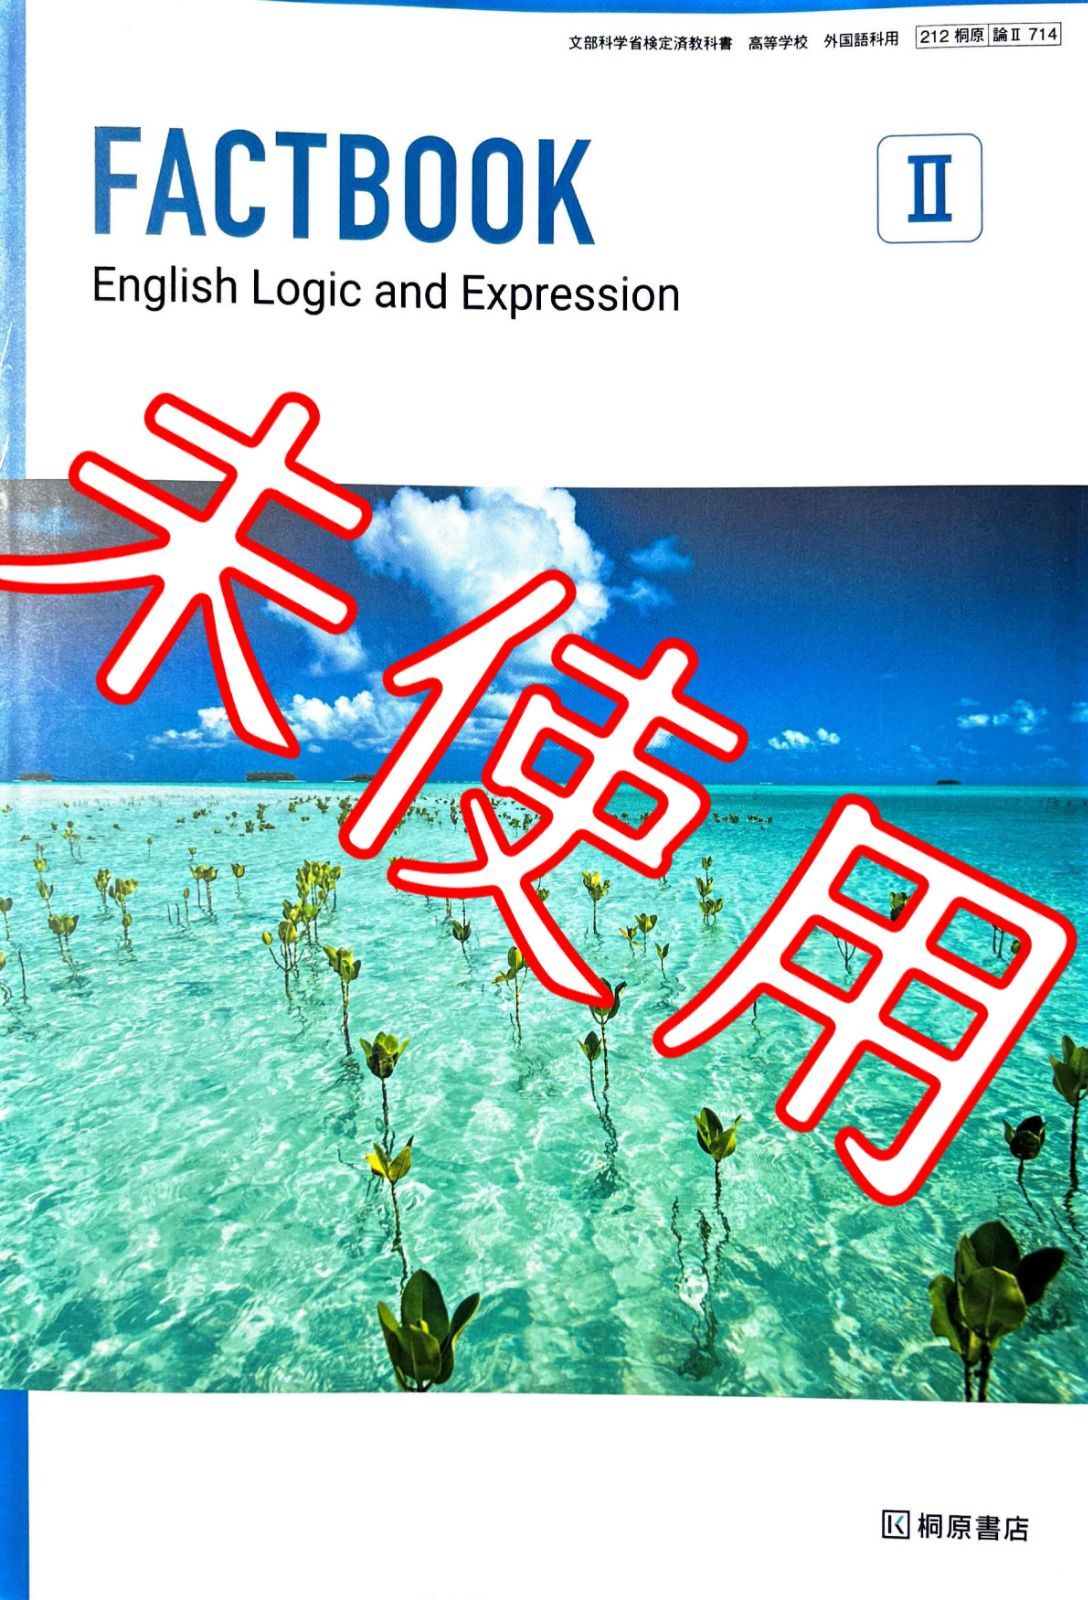 新課程 論表Ⅱ FACTBOOK Logic Expreesion Ⅱ 2 論理・表現Ⅱ FACT 